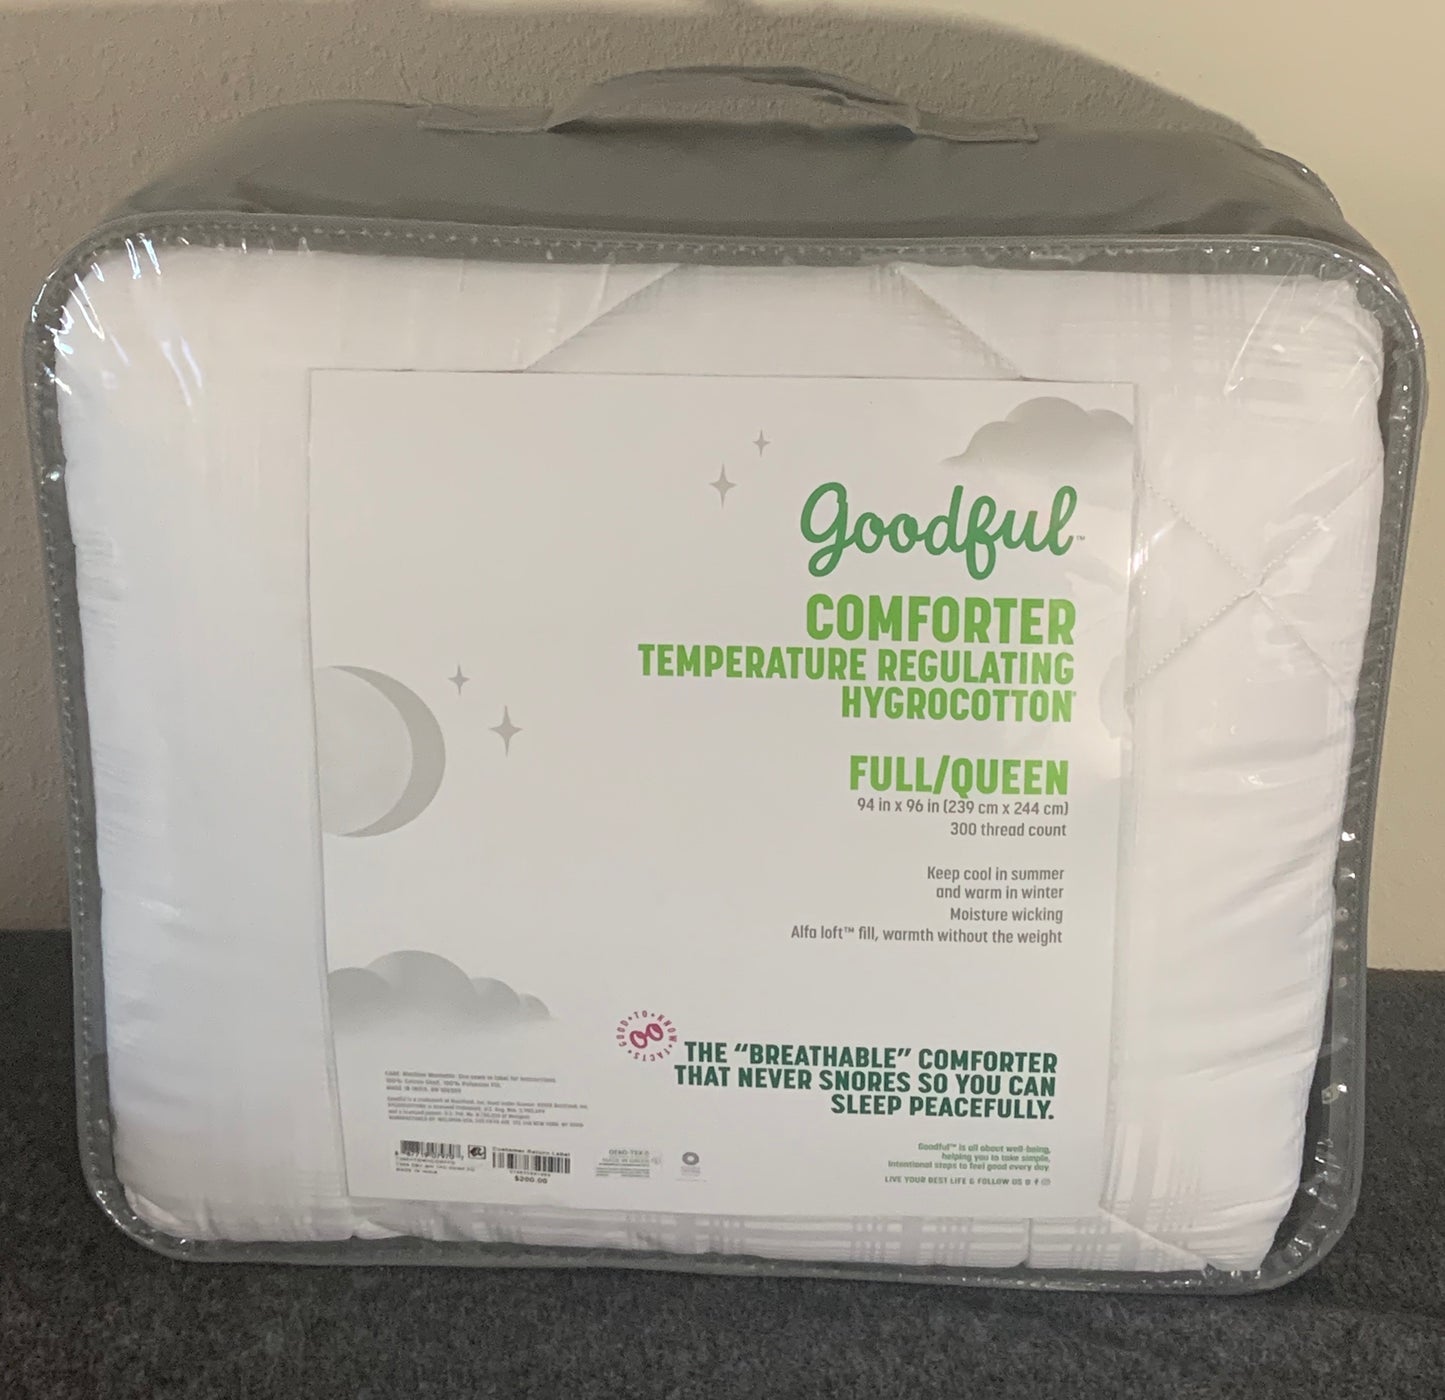 Goodful Comforter Temperature Regulating Hygrocotton Full/Queen